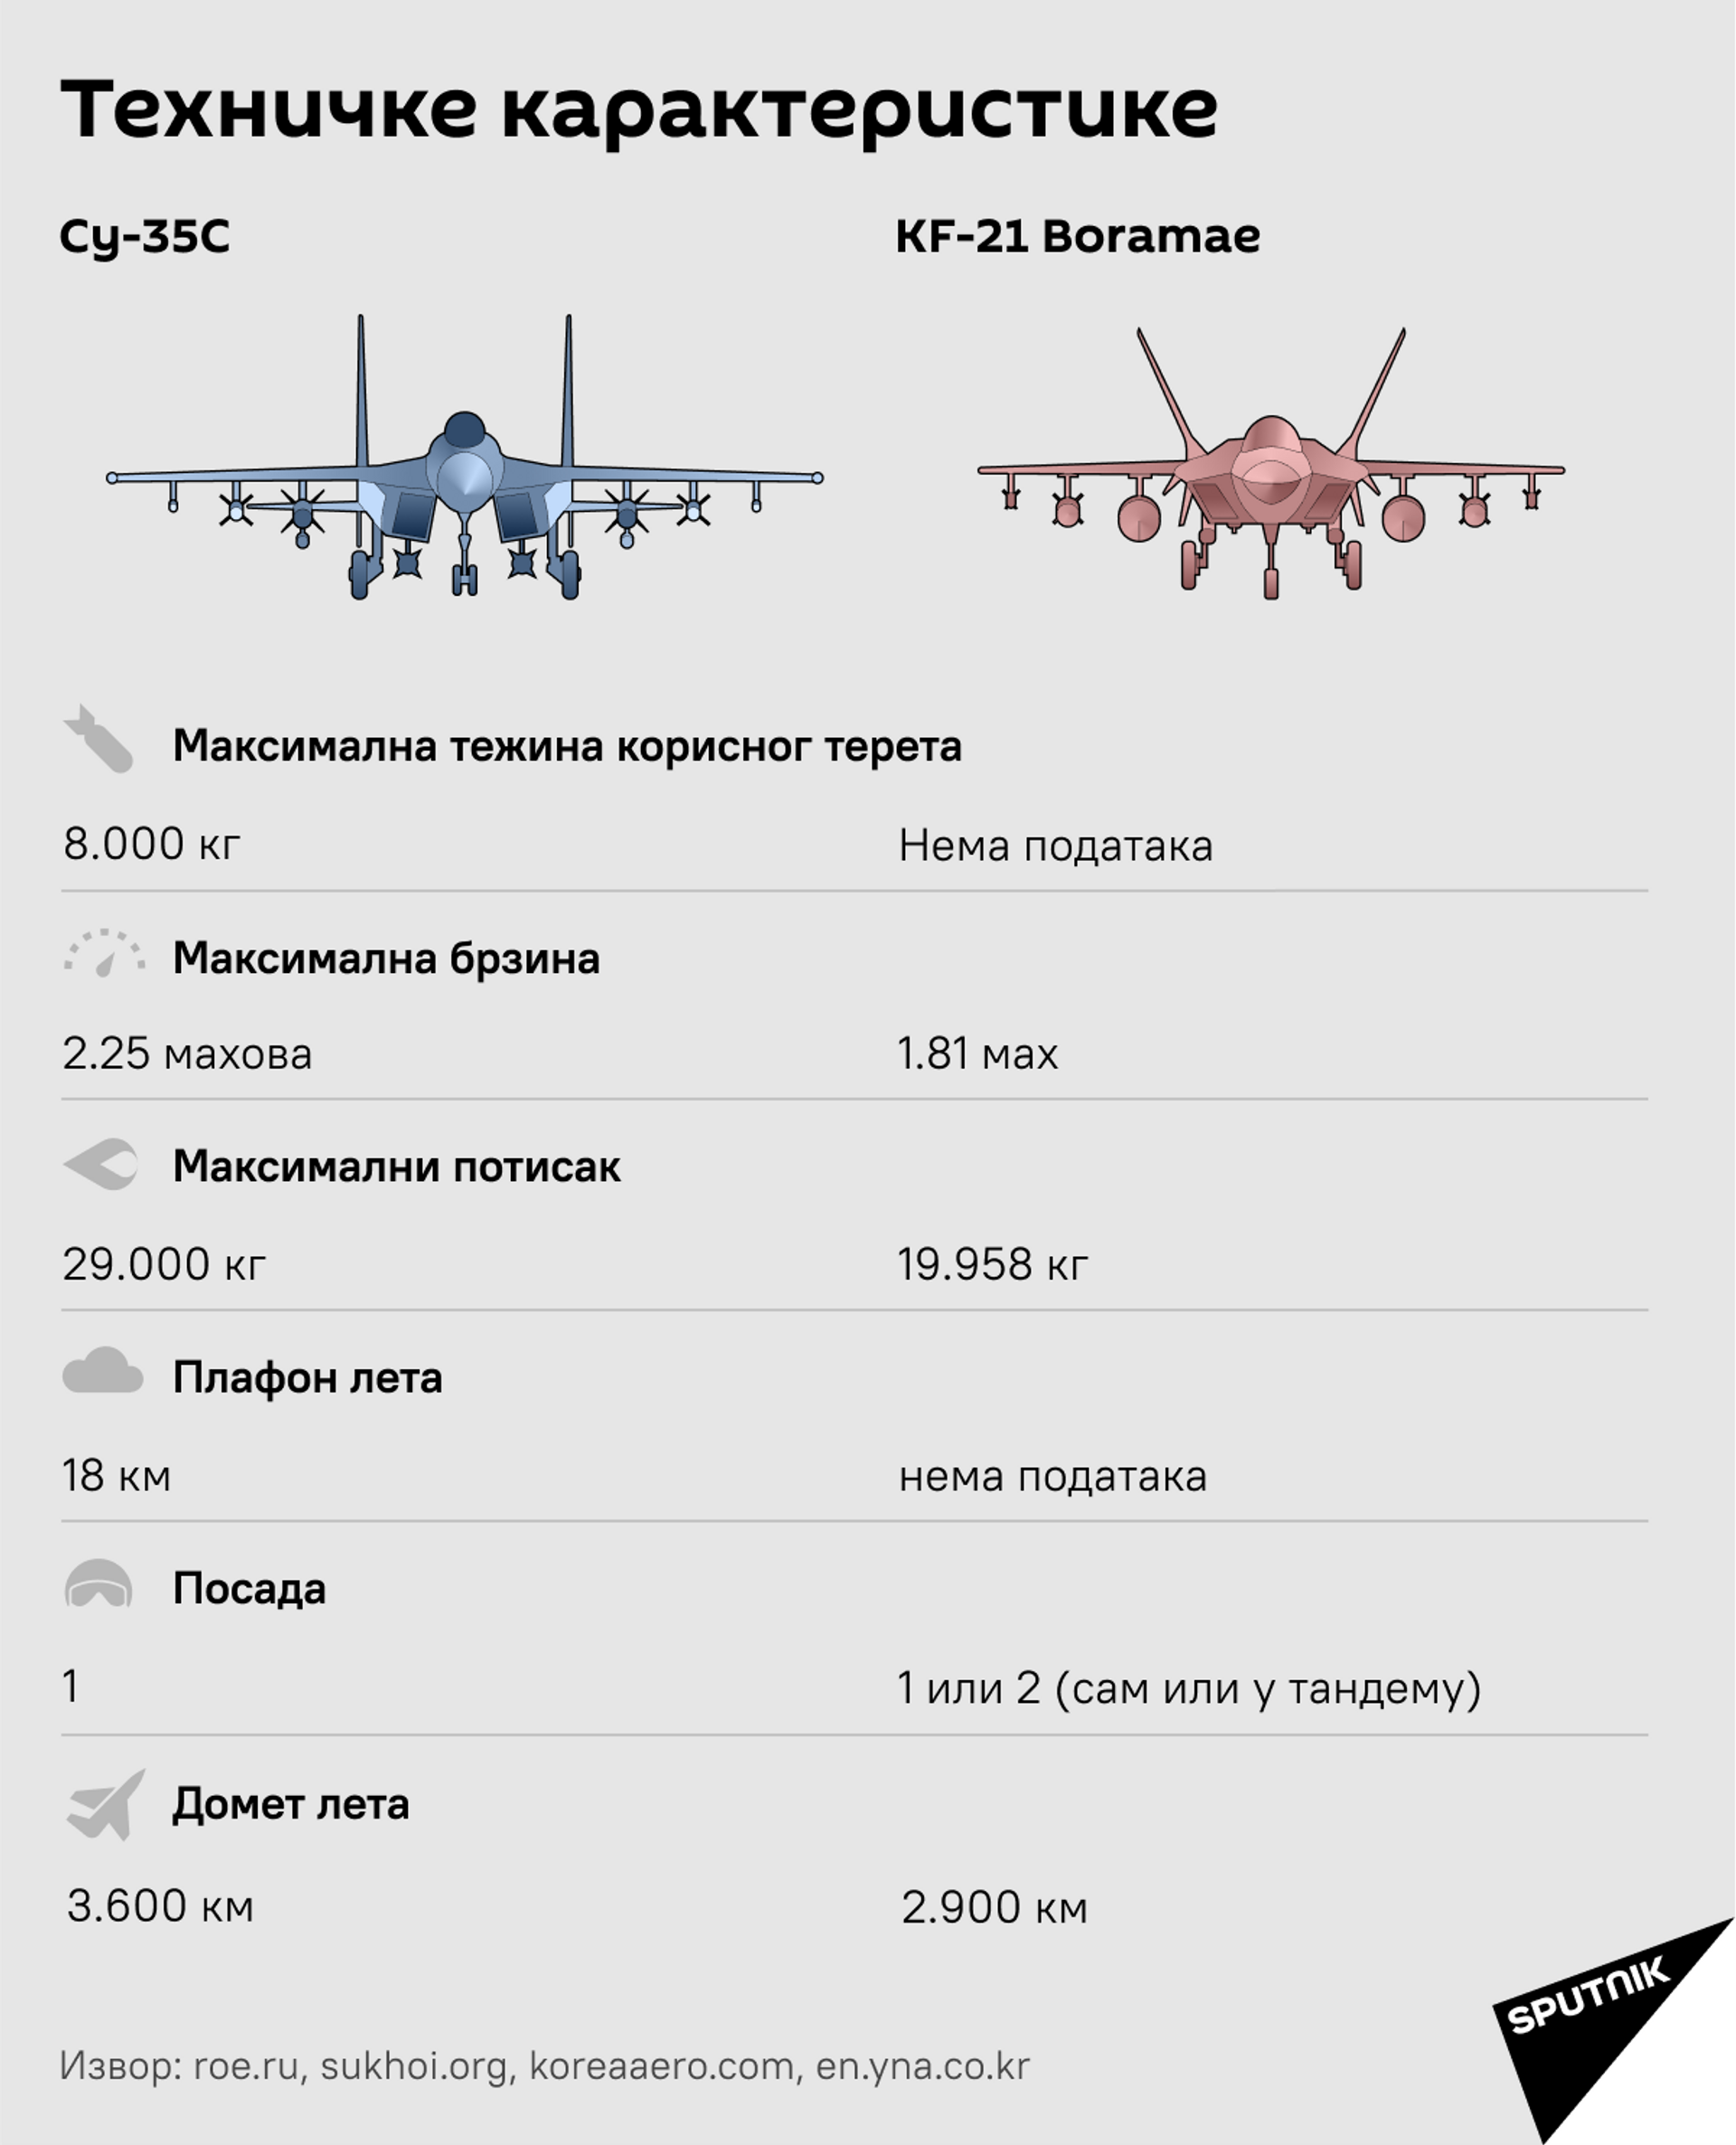 Su-35S ili KF 21 „Boramae“: Nove generacije lovačkih aviona /foto/ - Sputnik Srbija, 1920, 21.04.2021